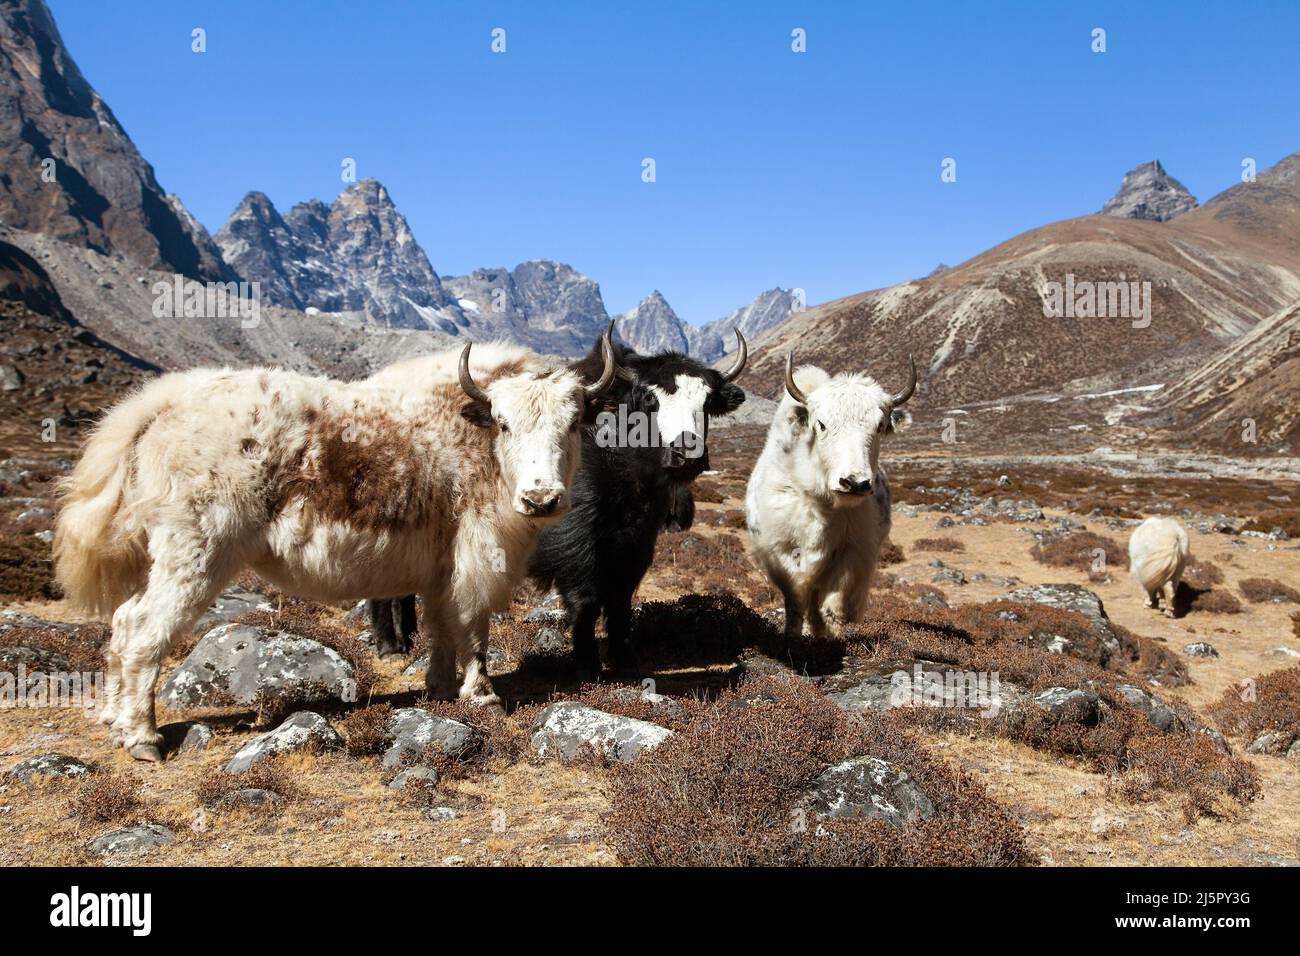 Groupe de trois yaks, bos grunniens ou bos mutus, sur le chemin du camp de base de l'Everest, montagnes de l'Himalaya du Népal Banque D'Images